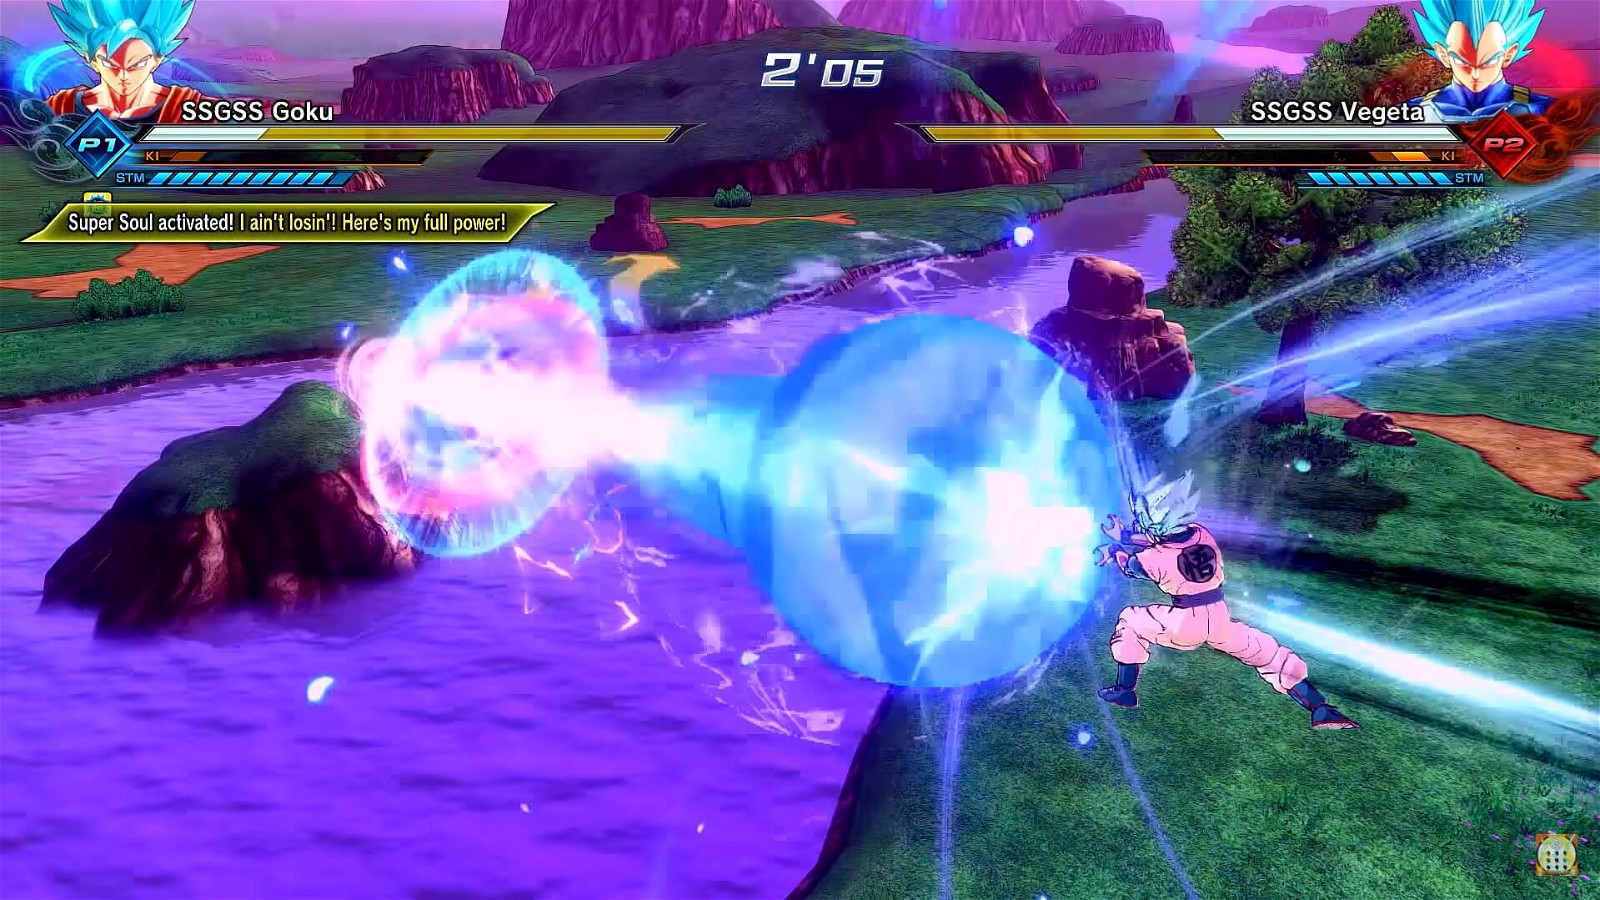 Super Saiyan Blue Goku and Super Saiyan Blue Vegeta in a beam struggle. Credits: RikudouFox on YouTube